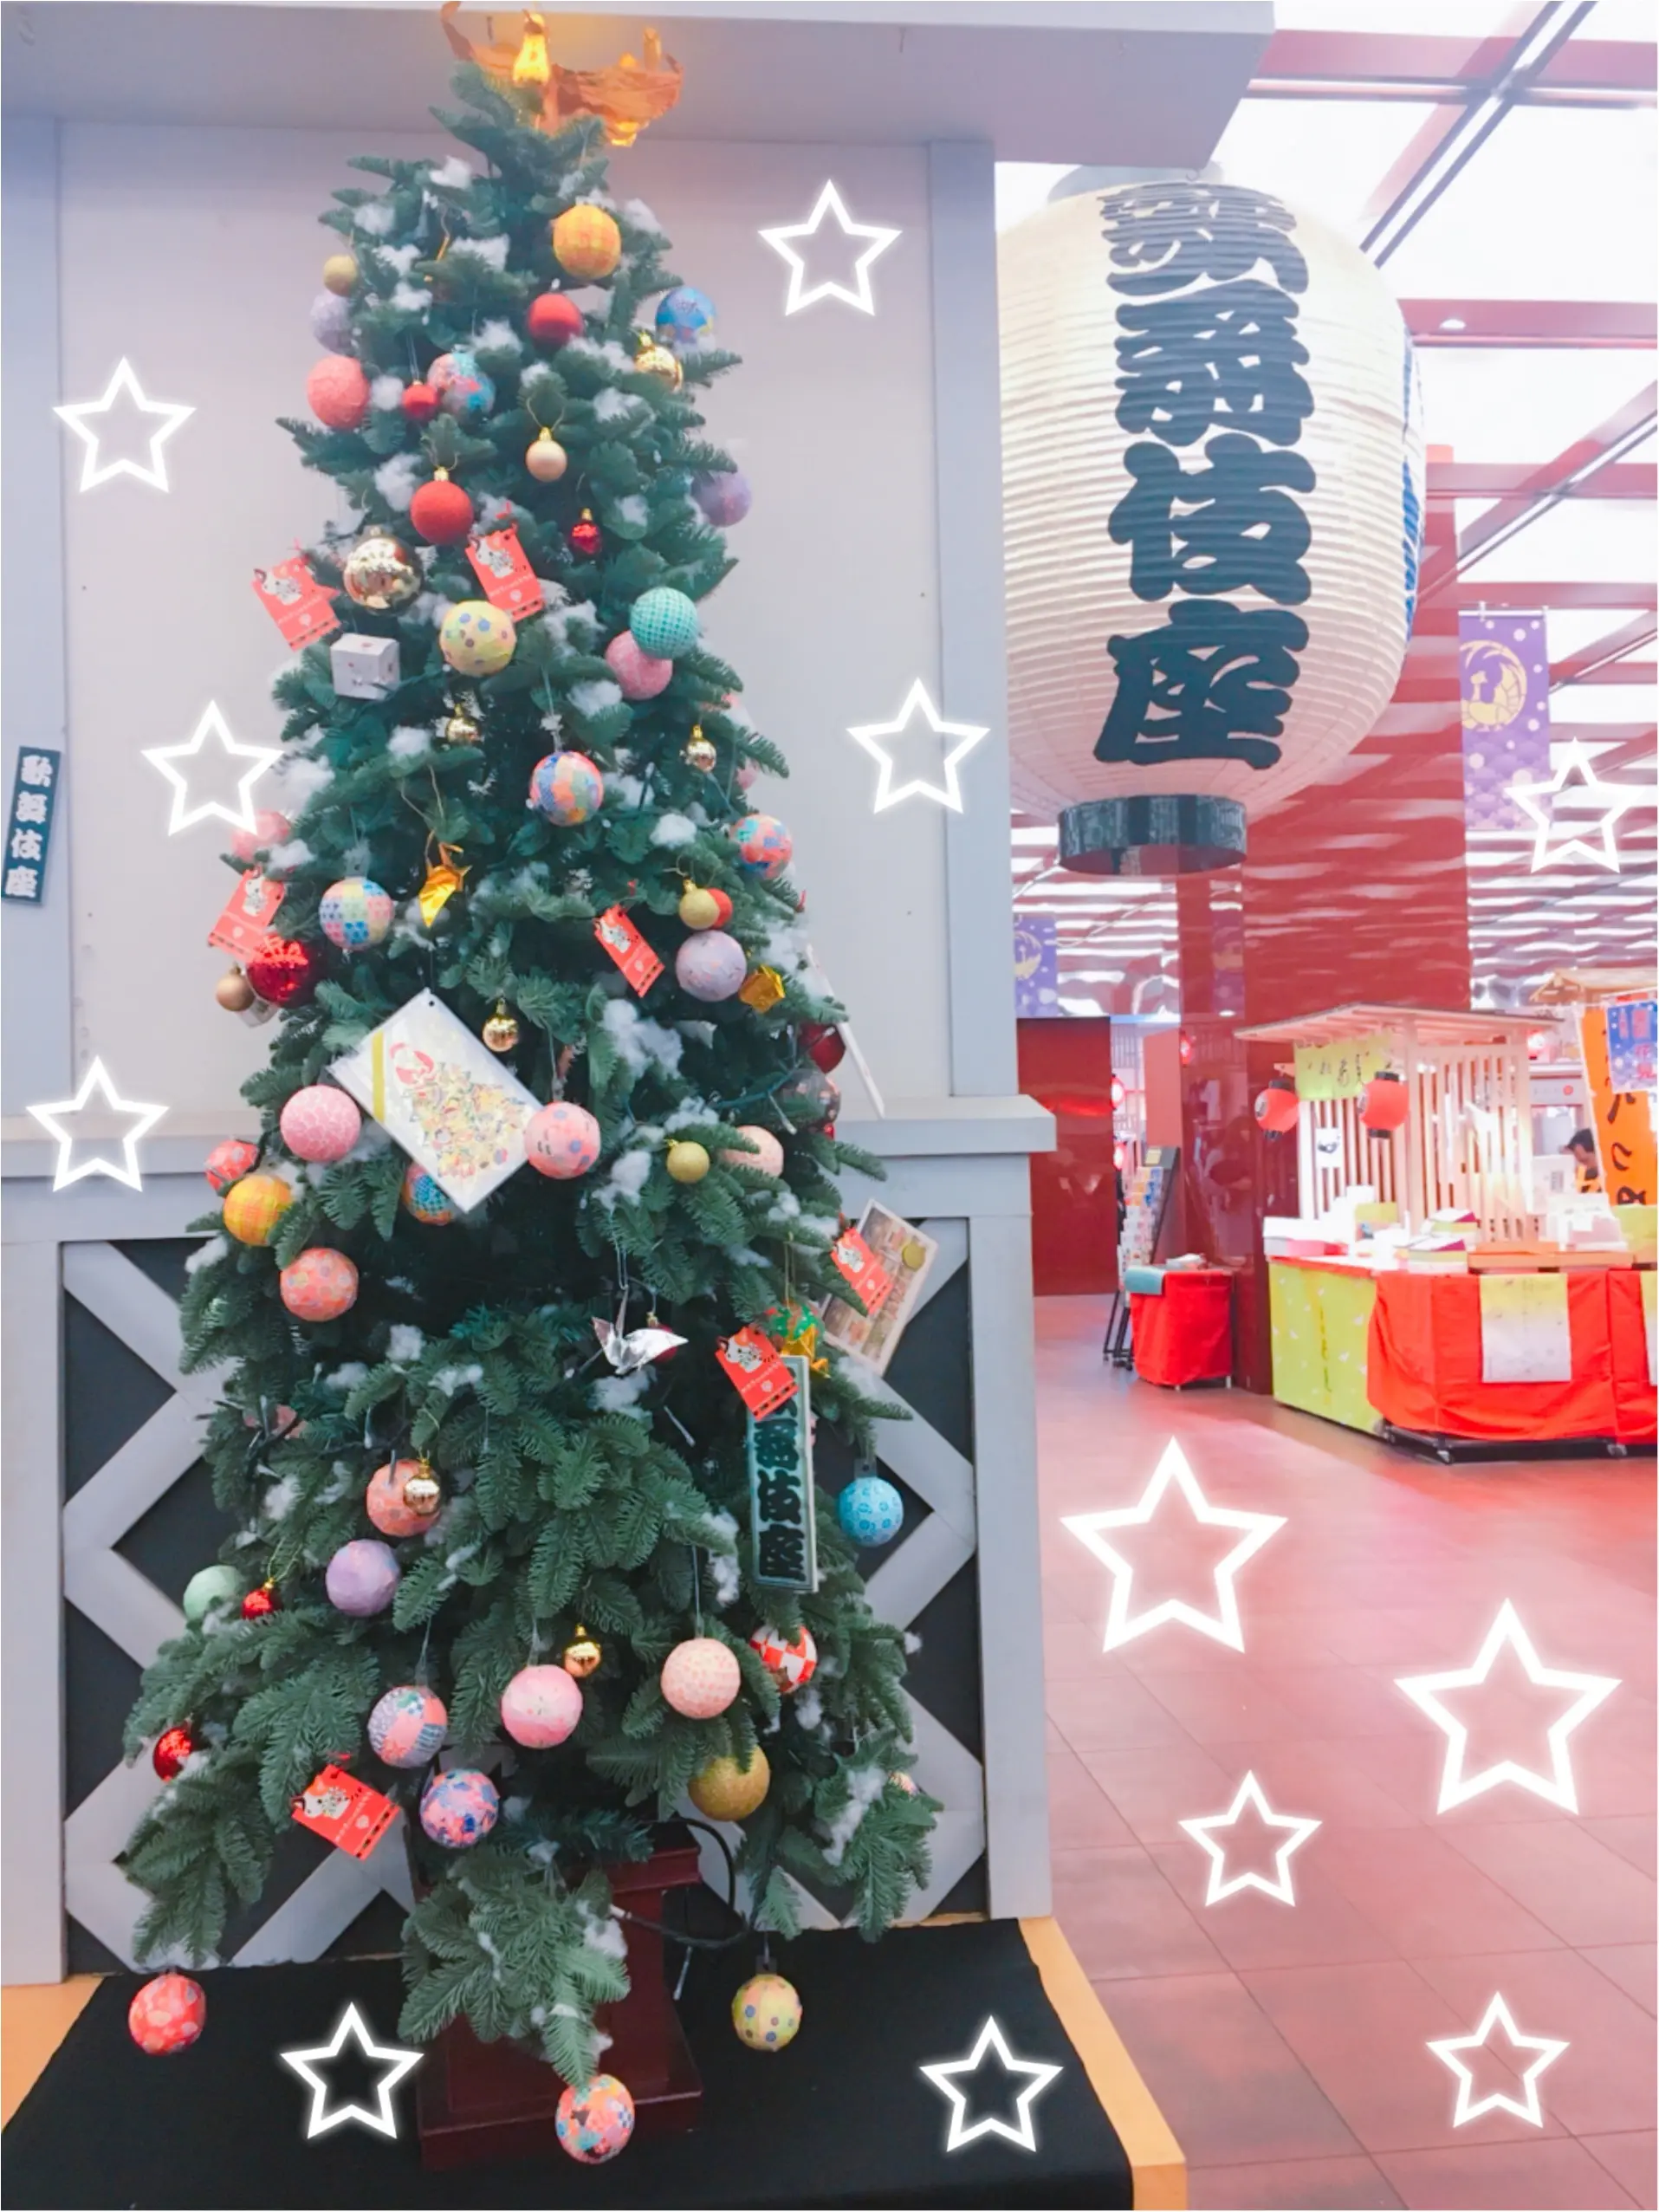 クリスマスまであと6日 クリスマスツリーでカウントダウン ポップなデコレーションがかわいい和のツリー 歌舞伎座 Moreインフルエンサーズブログ Daily More